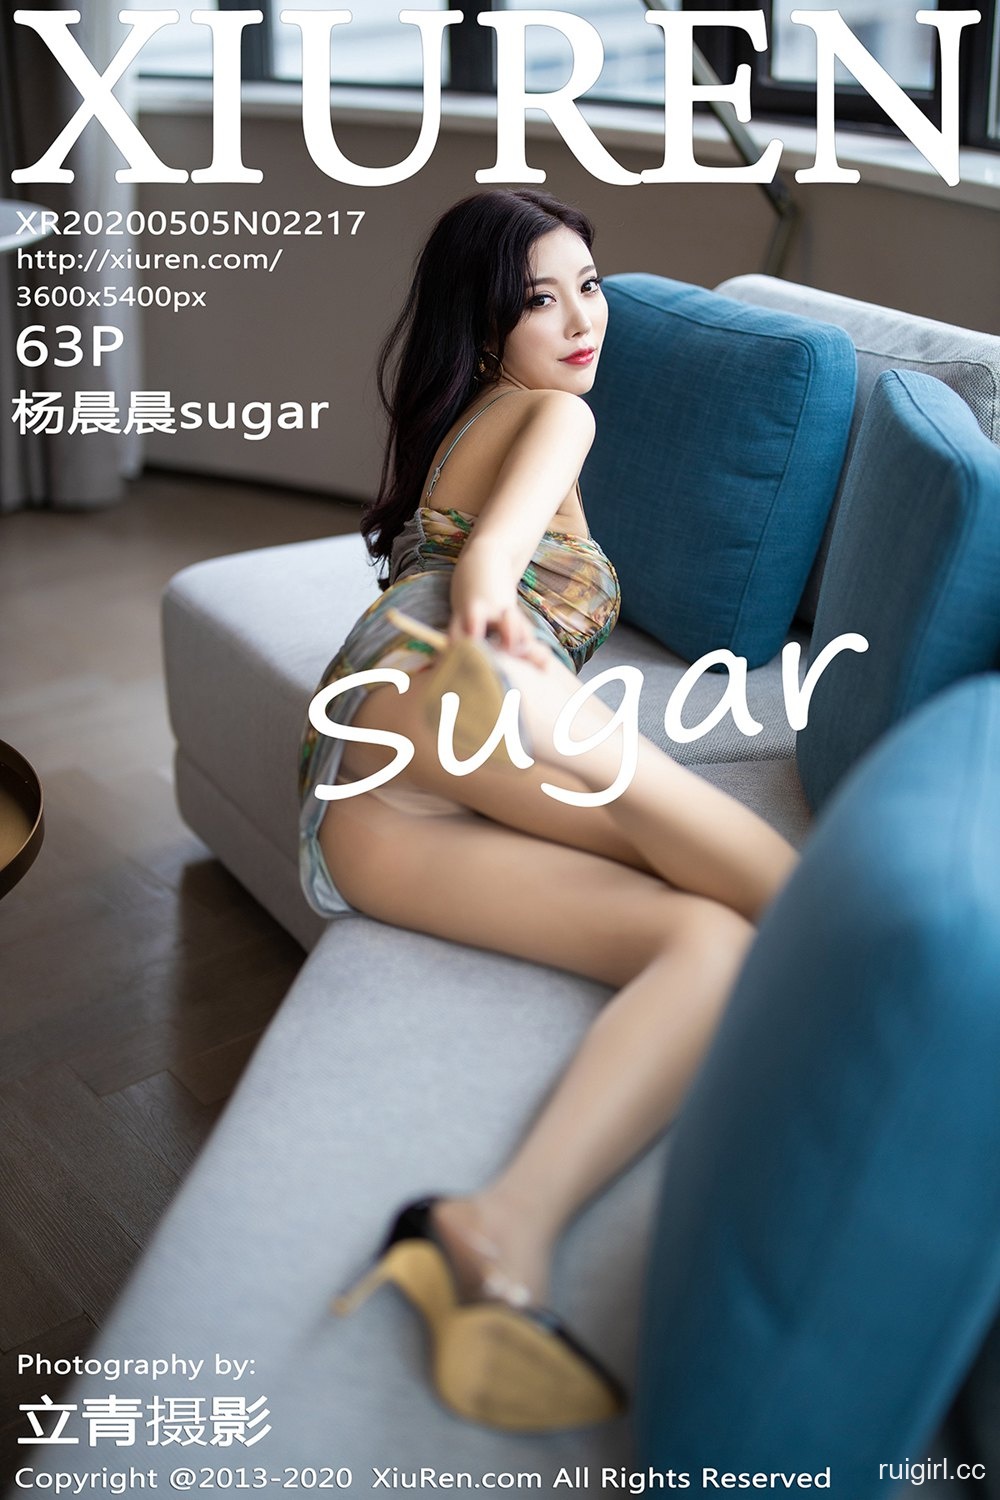 [XiuRen秀人网] 2020.05.05 No.2217 杨晨晨sugar [63+1P]